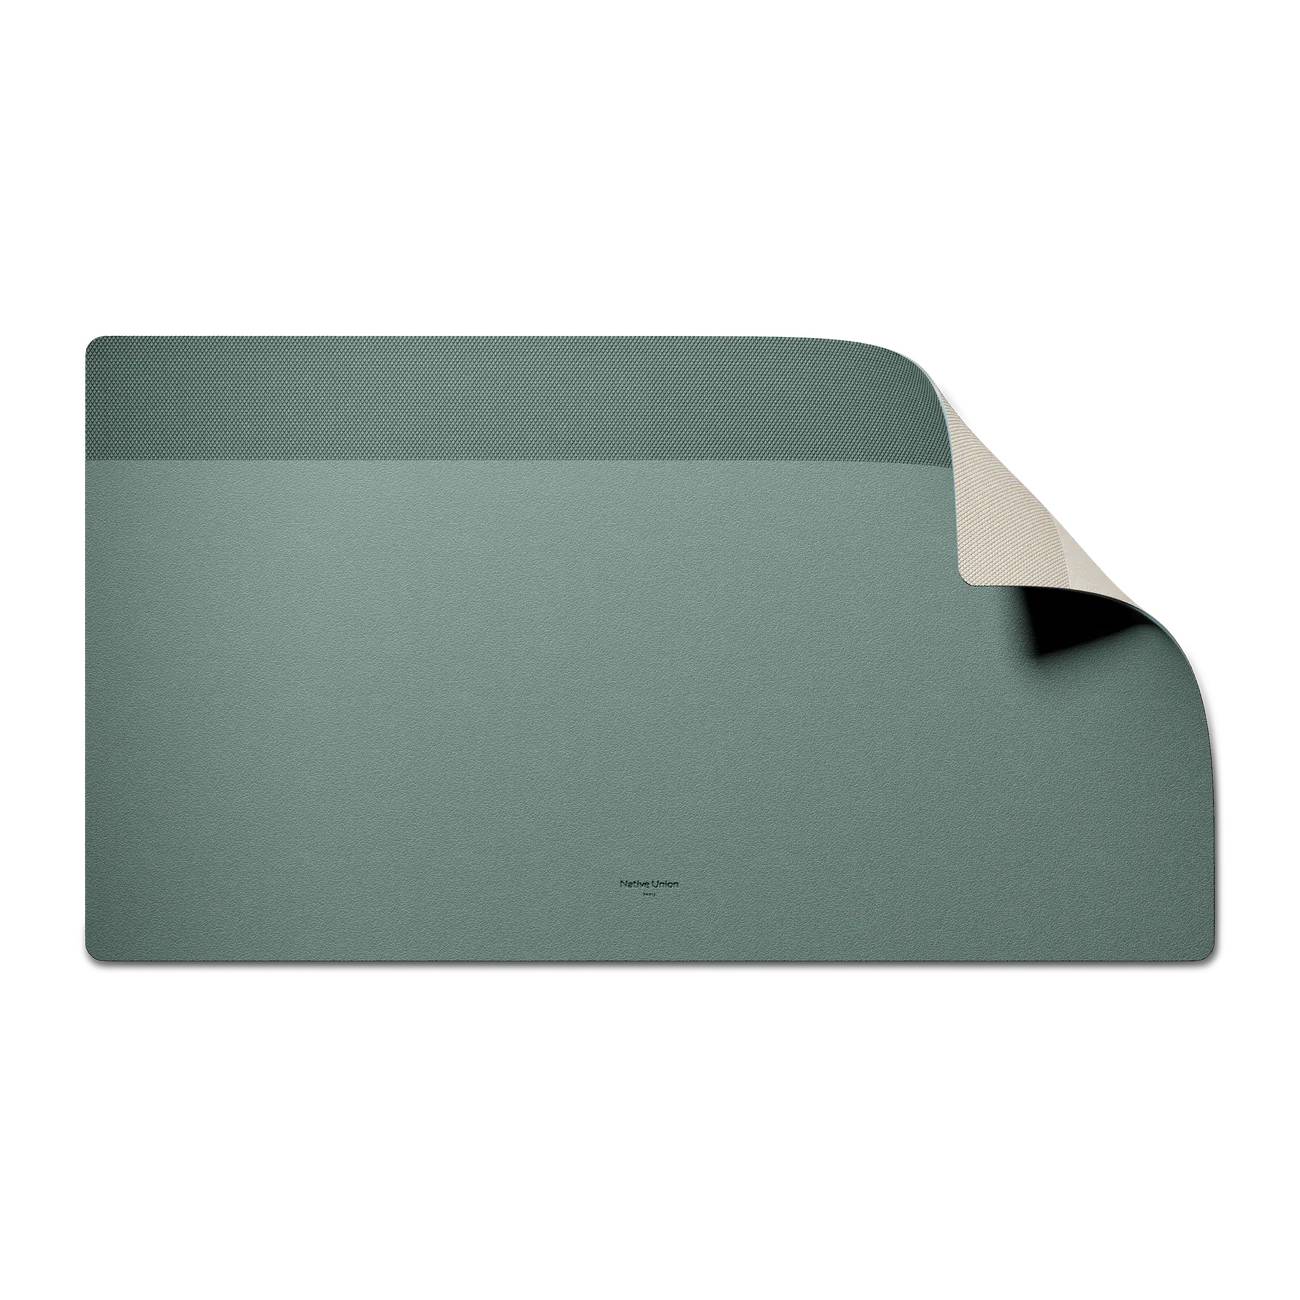 Фото — Коврик для мыши Native Union Desk Mat, зеленый